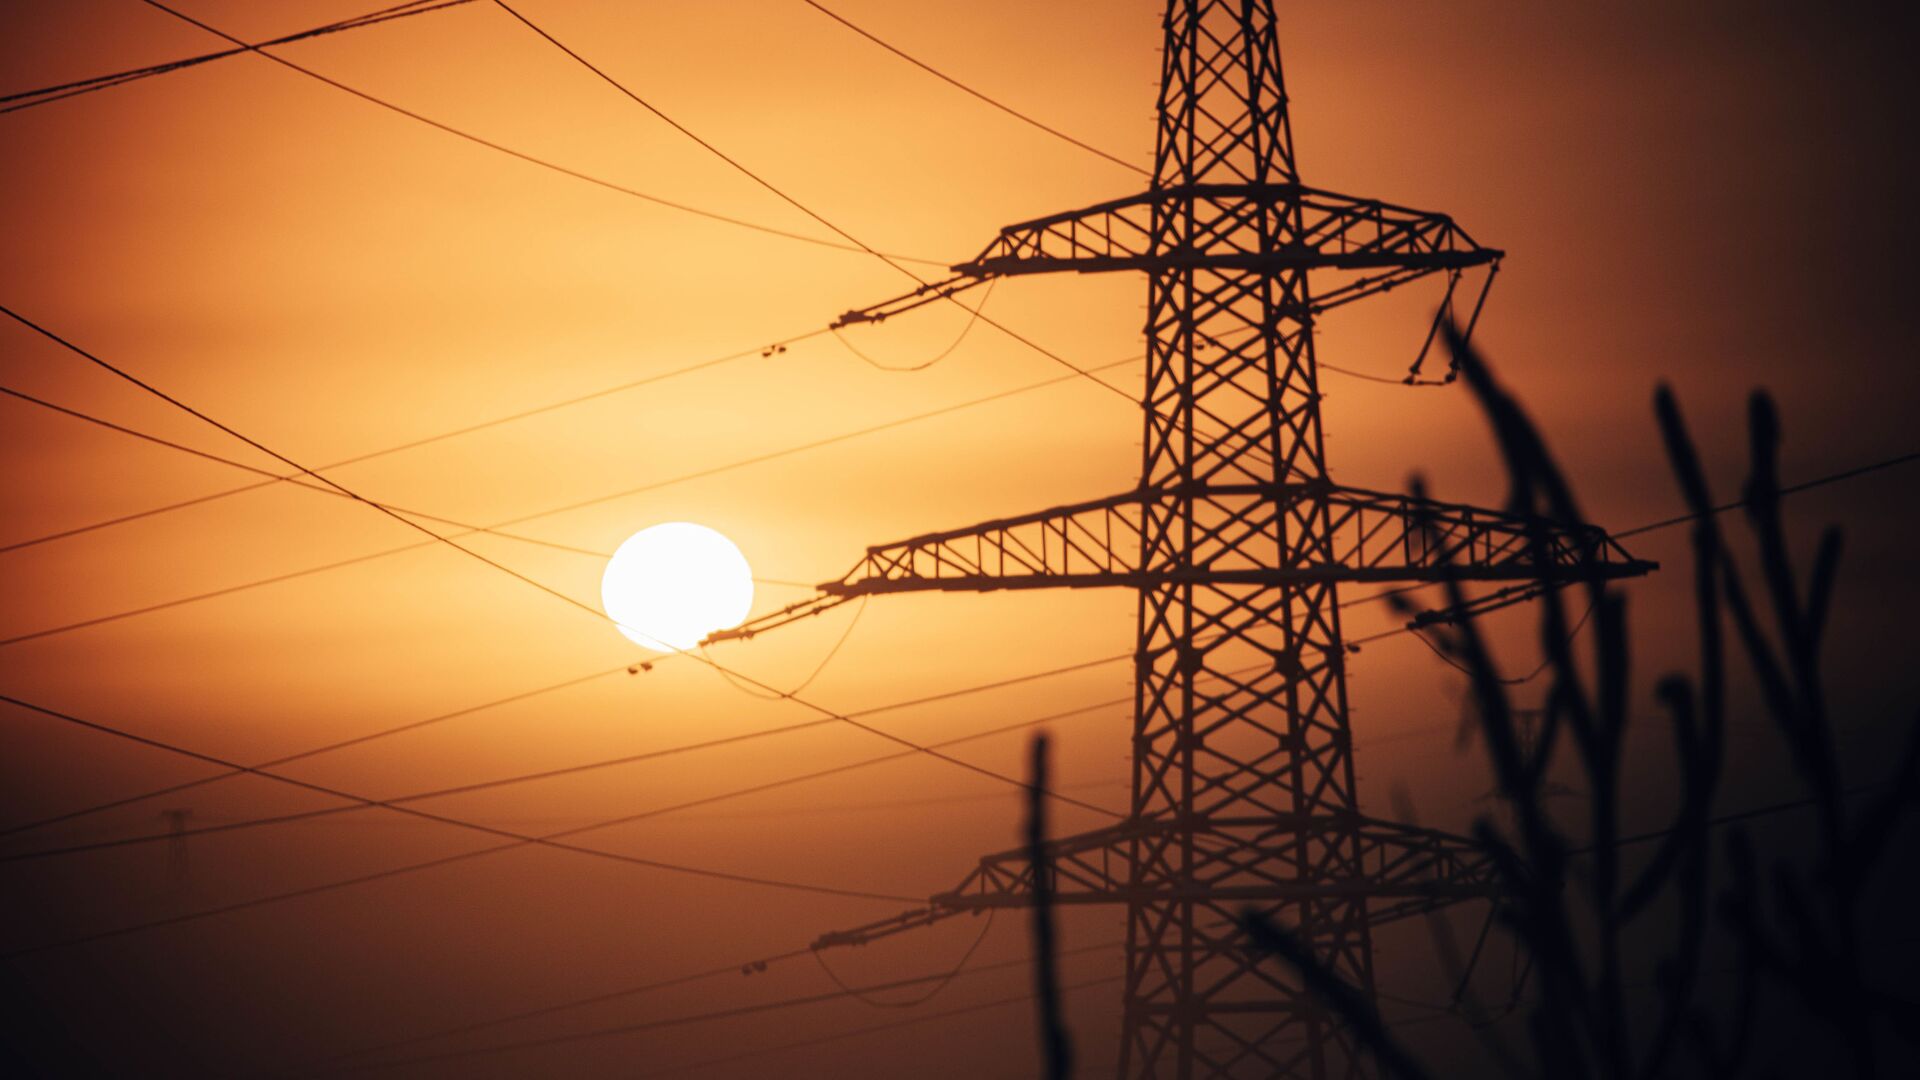 Либерализация цен на электроэнергию и газ нужна Узбекистану, — эксперты